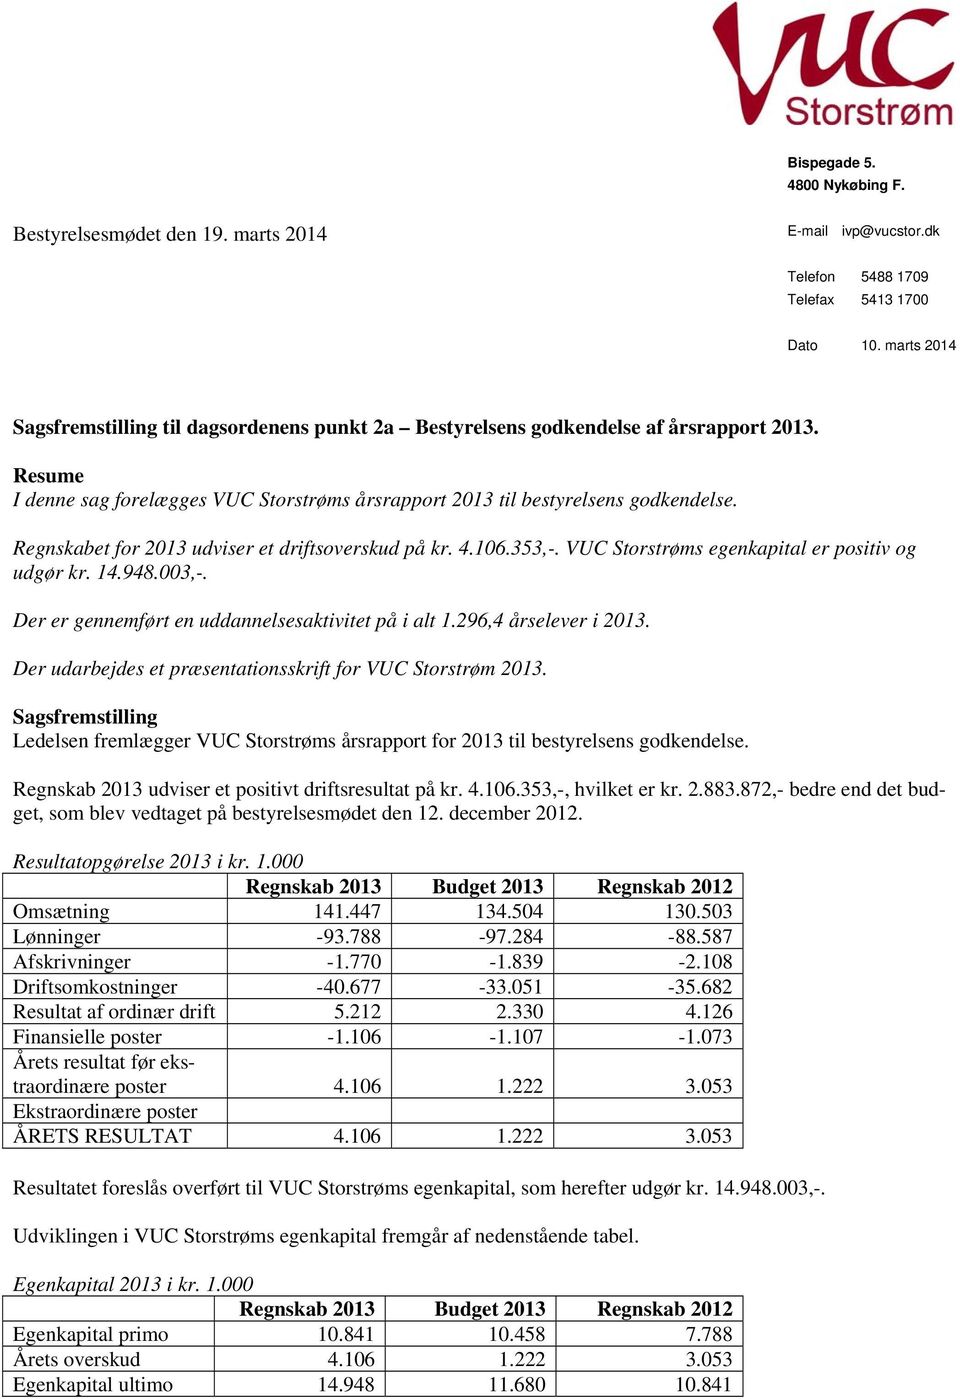 Regnskabet for 2013 udviser et driftsoverskud på kr. 4.106.353,-. VUC Storstrøms egenkapital er positiv og udgør kr. 14.948.003,-. Der er gennemført en uddannelsesaktivitet på i alt 1.